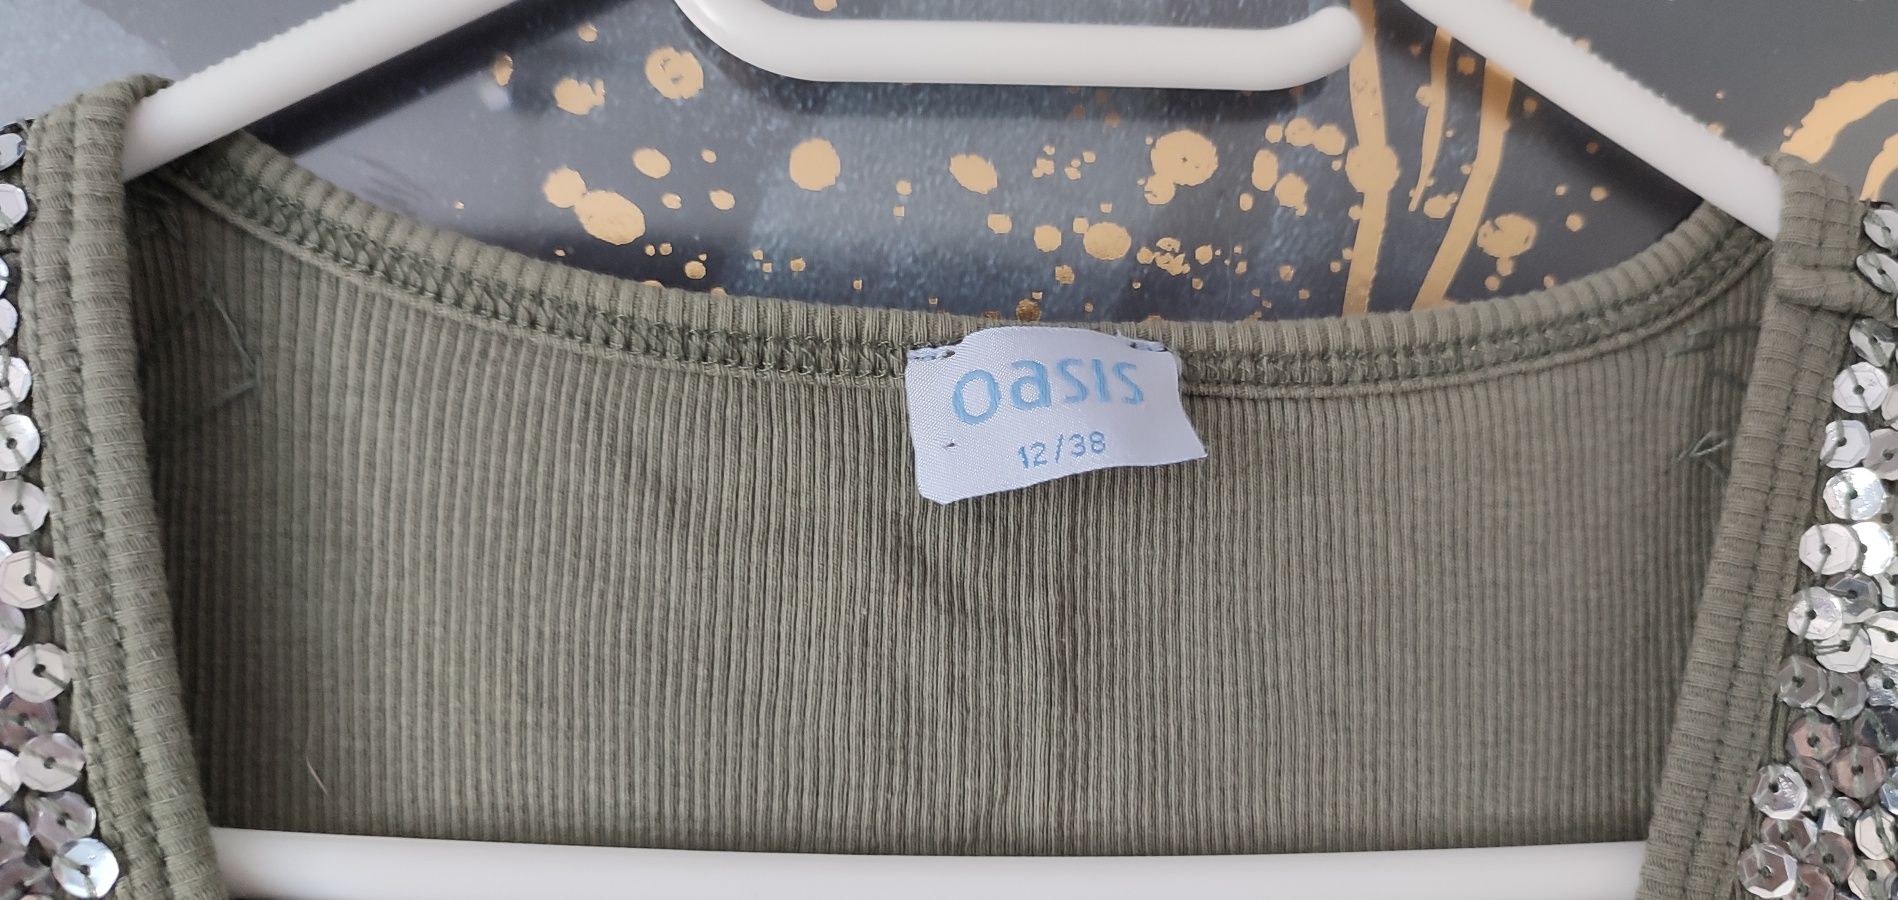 T-shirt Oasis 38 M kolor jasny khaki, cekiny.